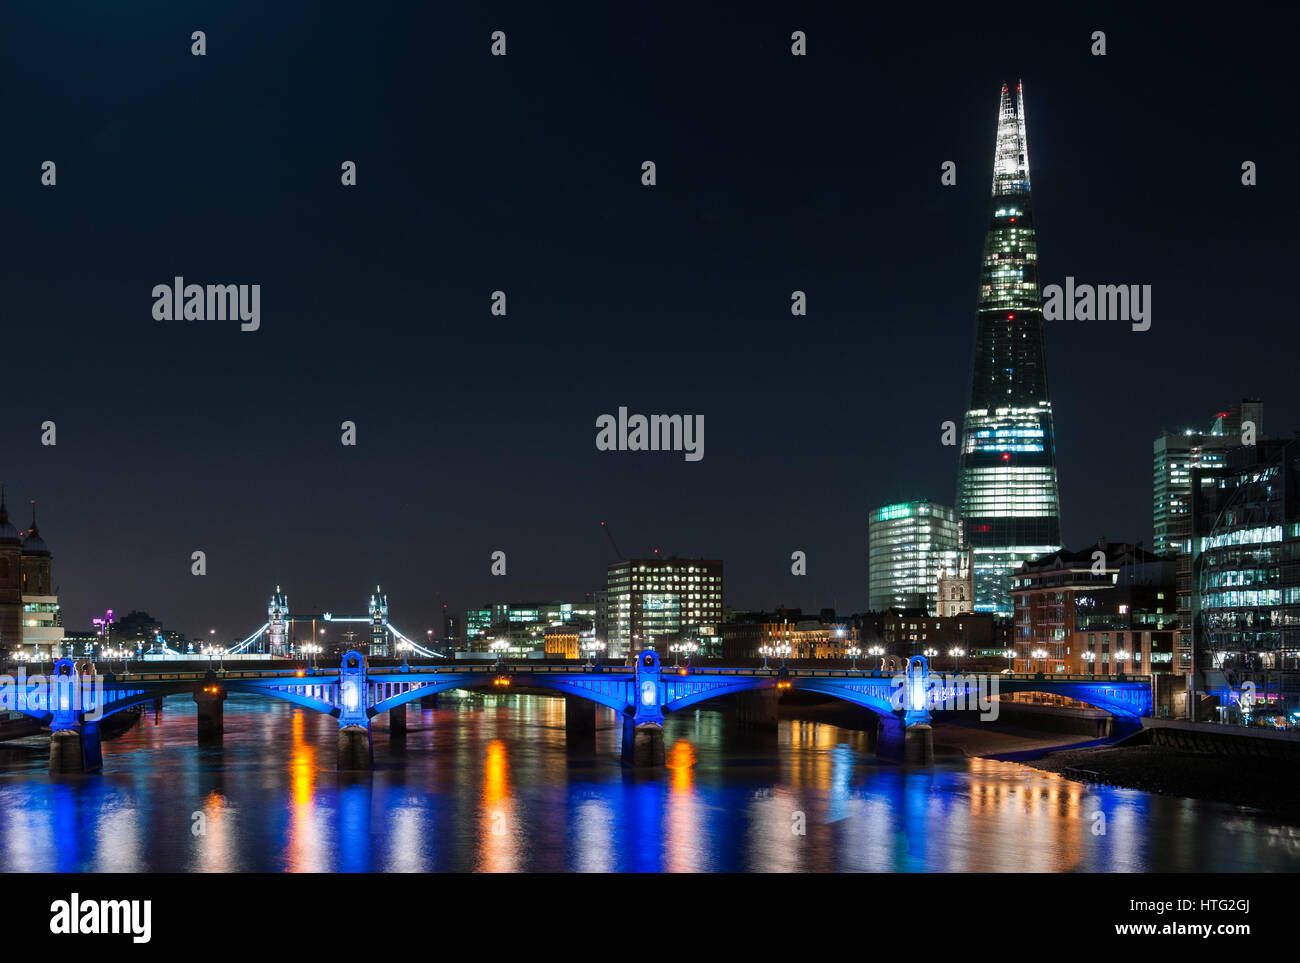 Les toits de la ville de Londres avec le Shard, London Bridge, la Tamise et autres bâtiments éclairés la nuit, Londres, Royaume-Uni Banque D'Images